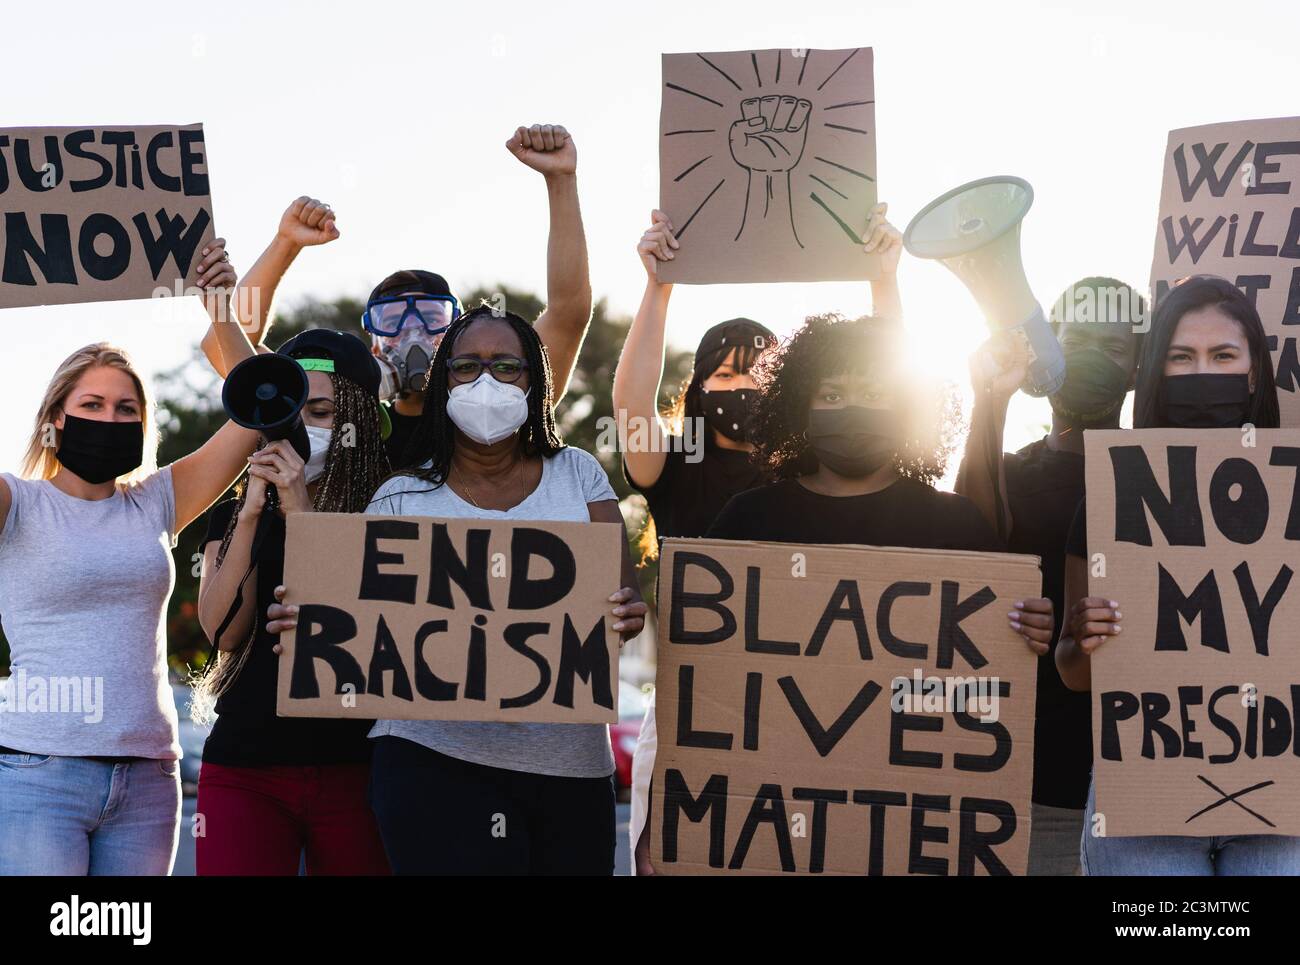 Menschen aus verschiedenen Kulturen und Rassen protestieren auf der Straße für Gleichberechtigung - Demonstranten tragen Gesichtsmasken während des Kampflagers für schwarze Menschenleben Stockfoto